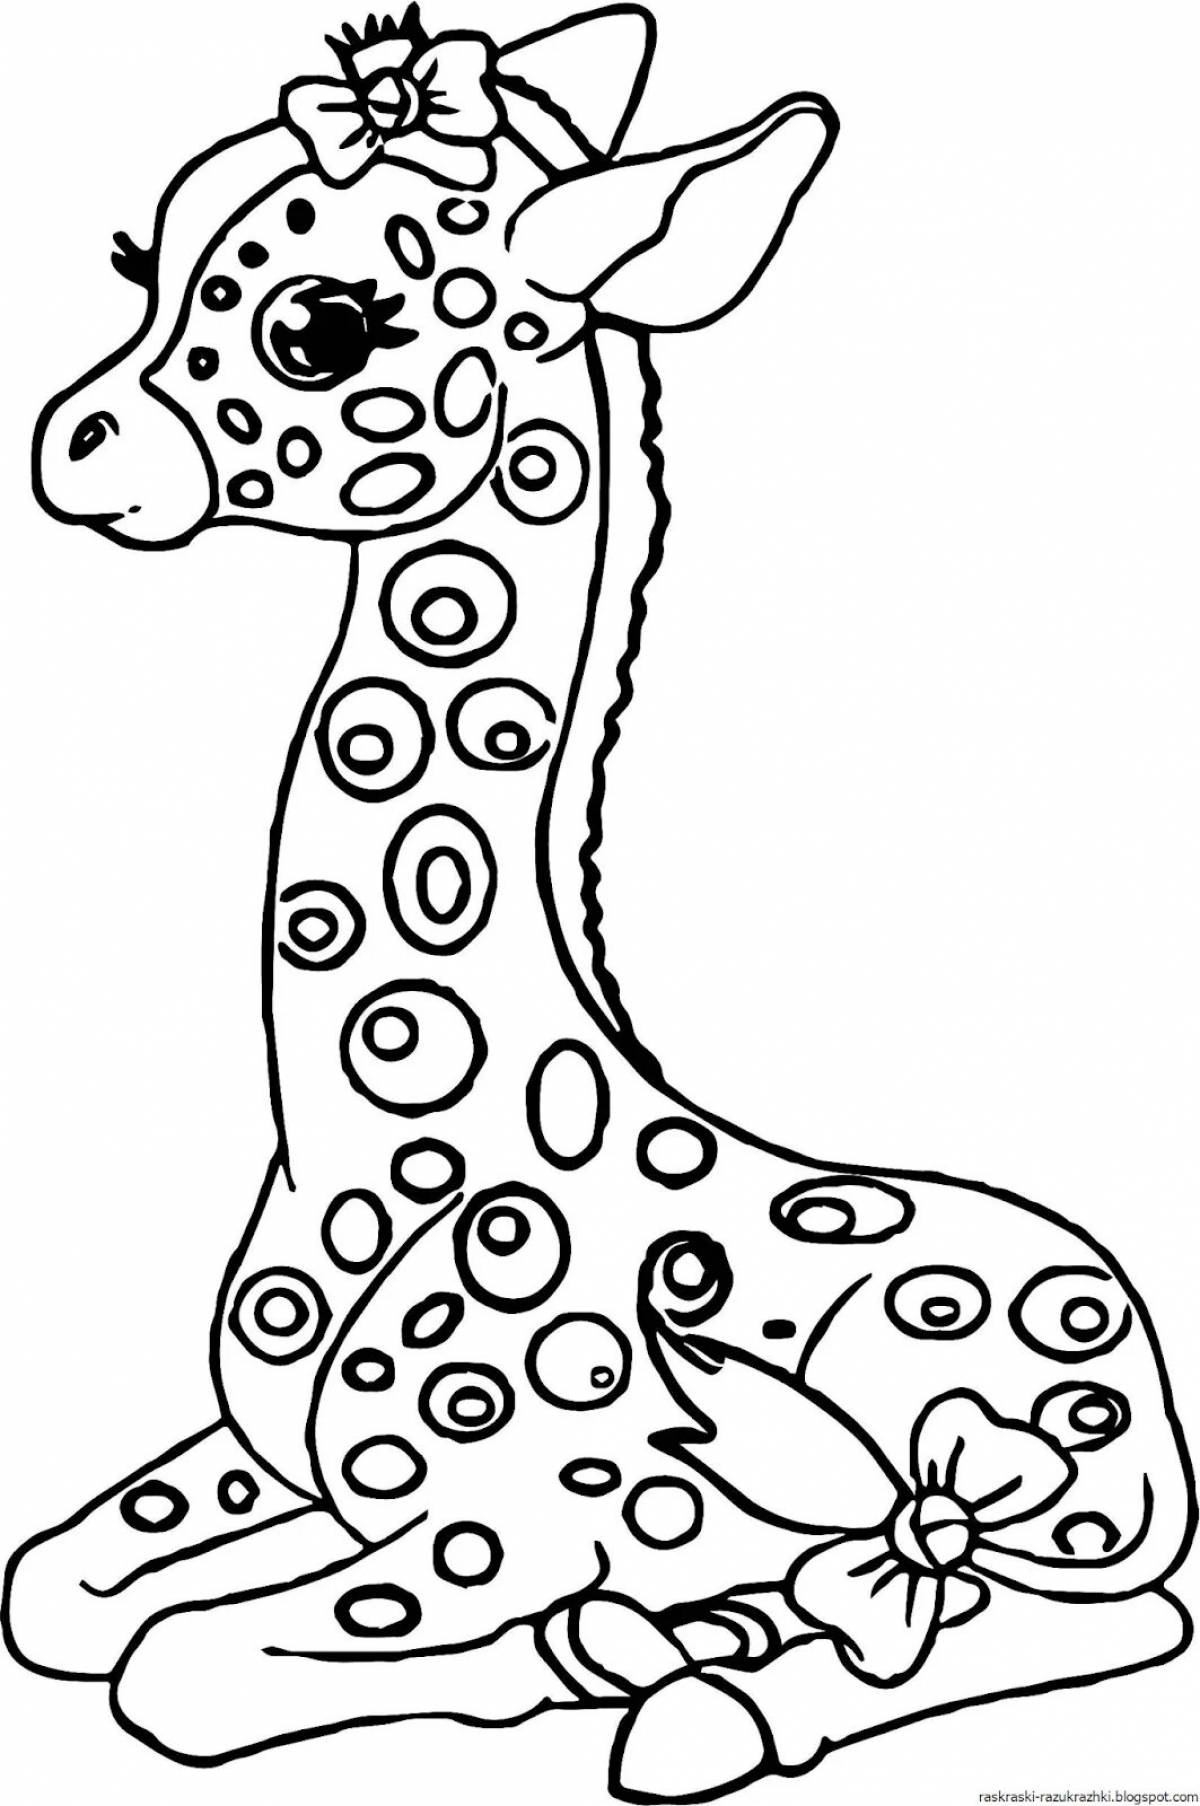 Замечательная раскраска жирафа для детей 4-5 лет